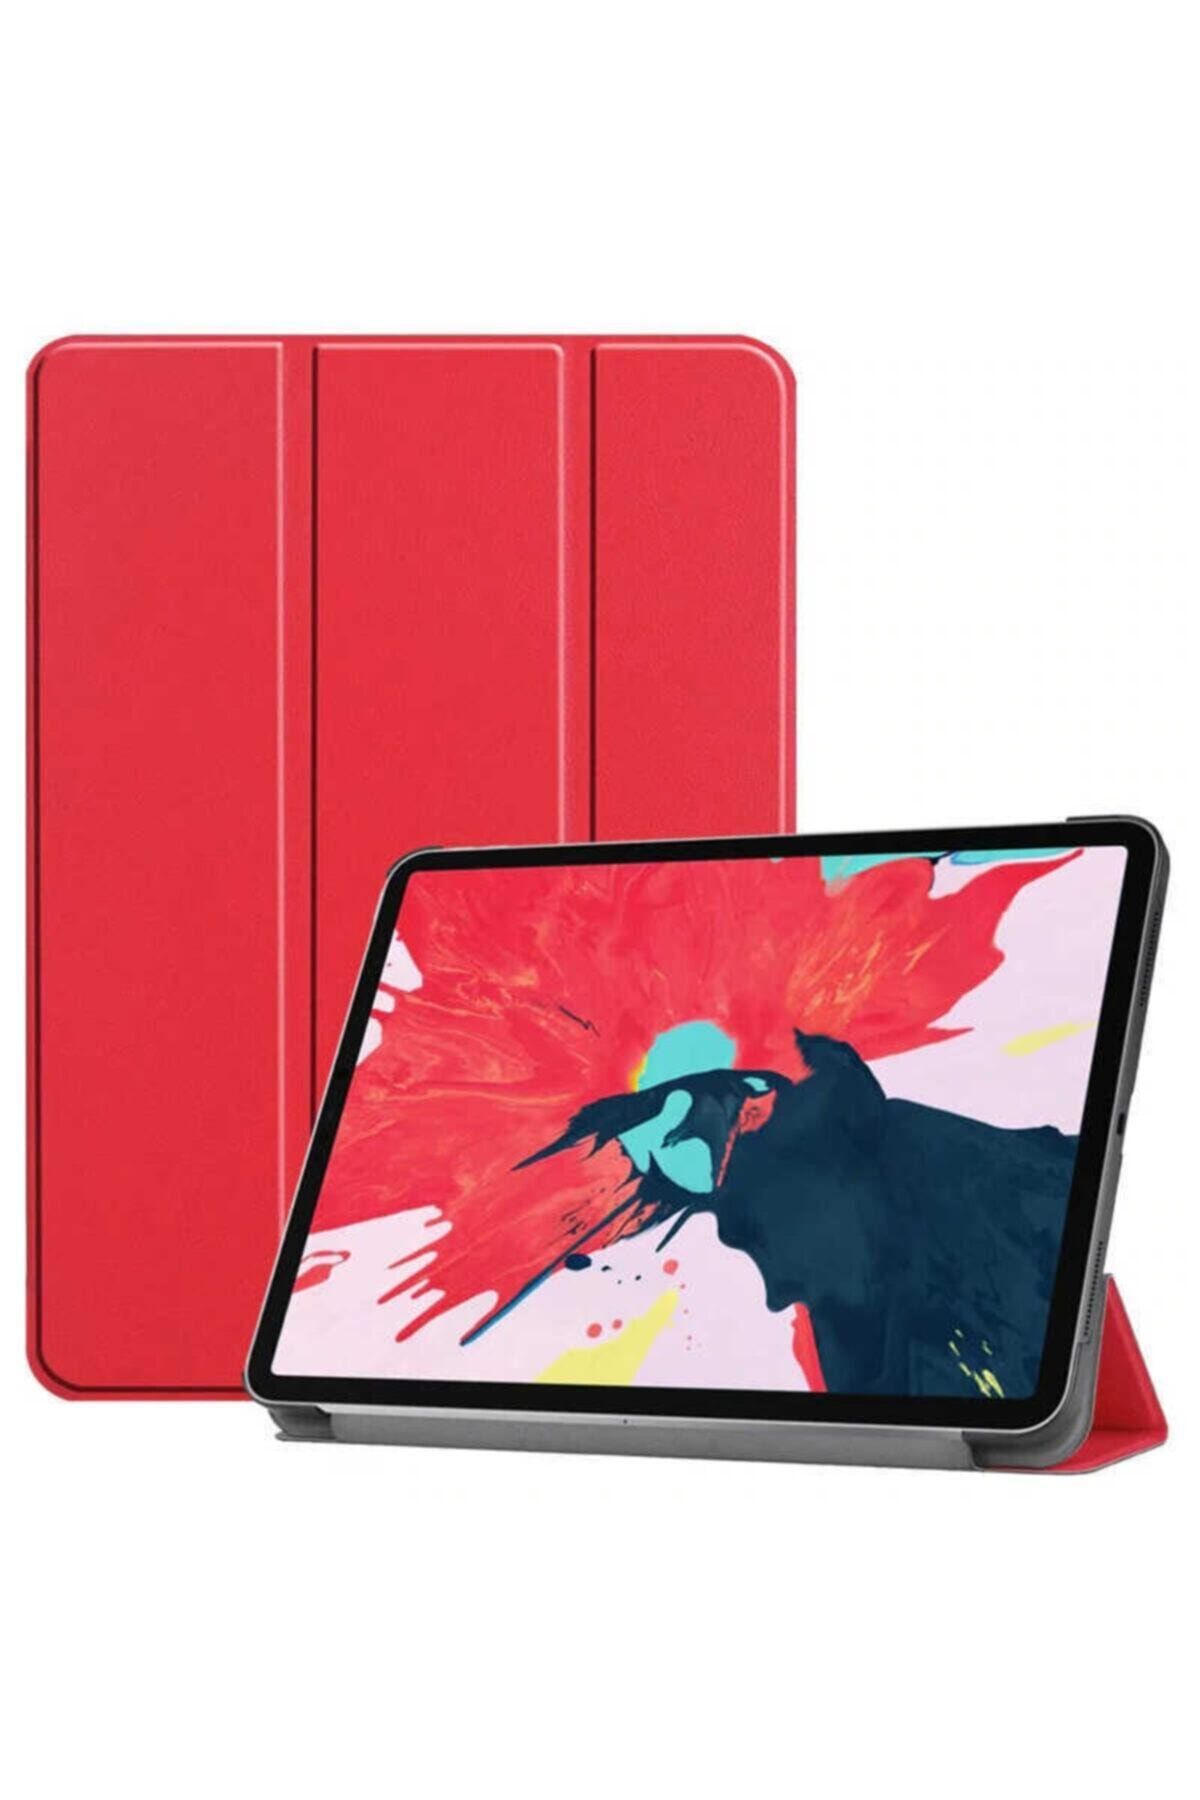 Teknoloji Gelsin Apple Ipad Pro 11 2020 2. Nesil Stand Kılıf Premium Flip Standlı Katlanabilir Smart Cover - Kırmızı